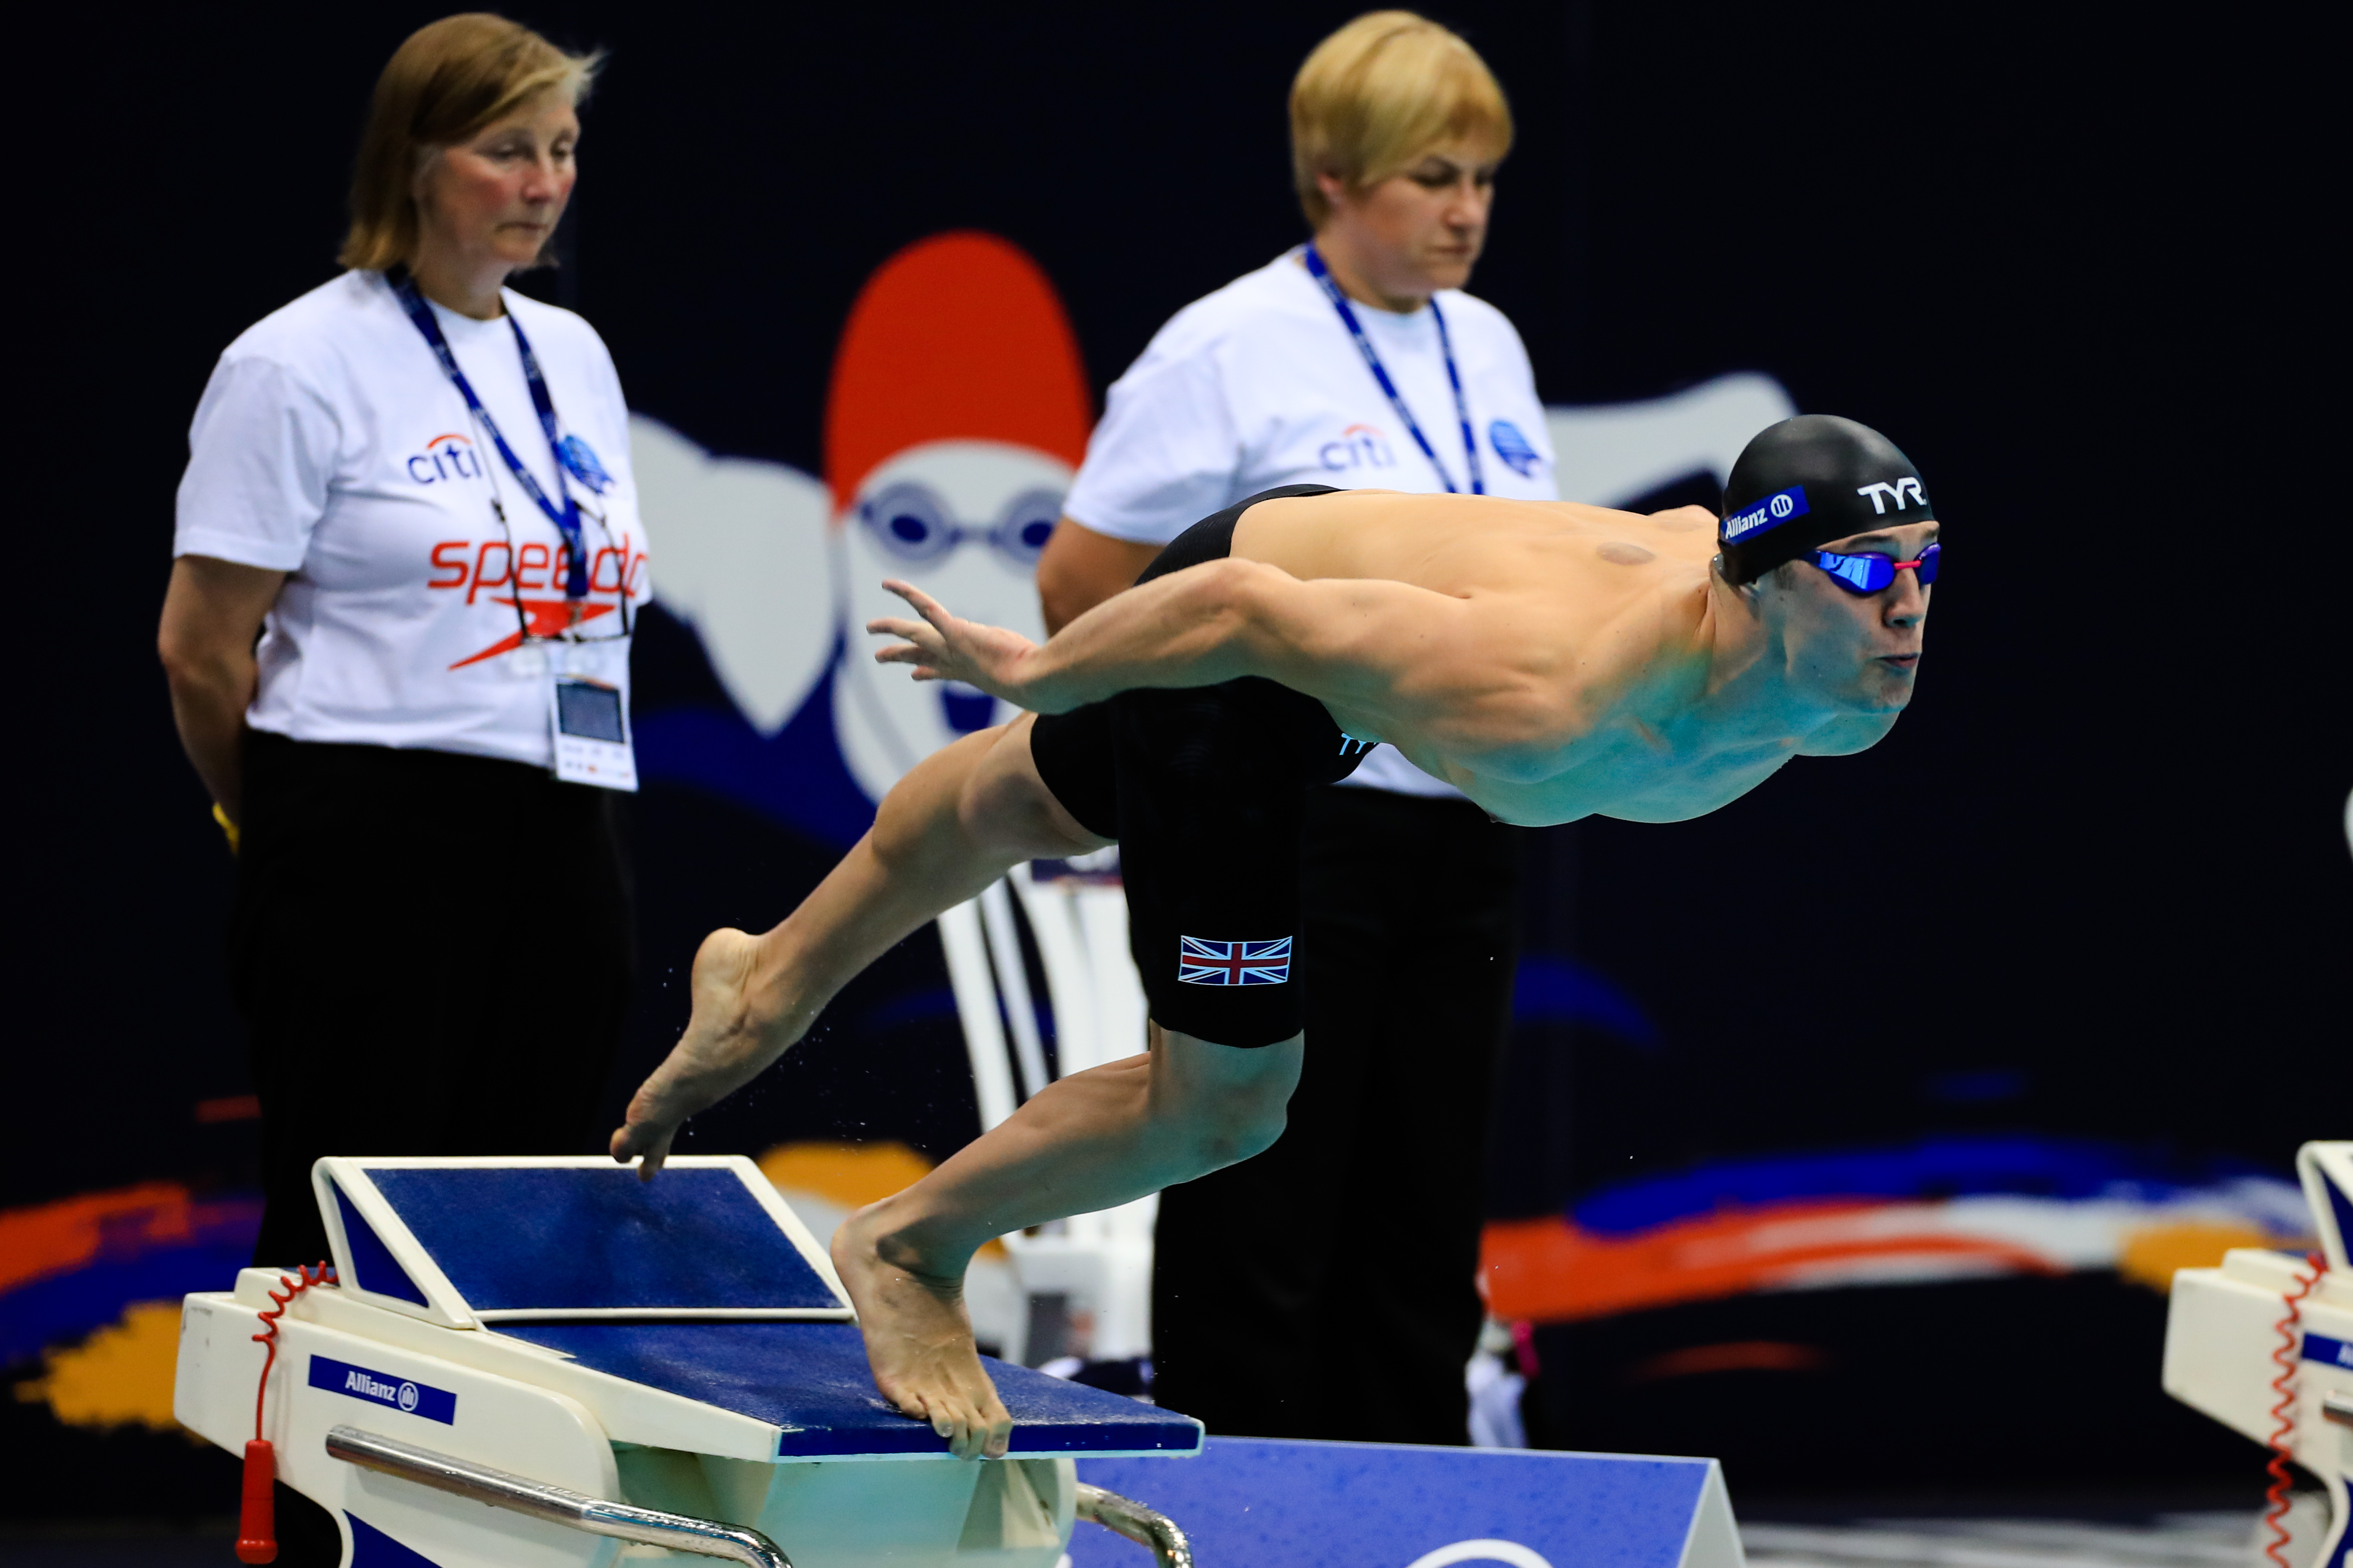 London 2019 World Para Swimming Allianz Championships